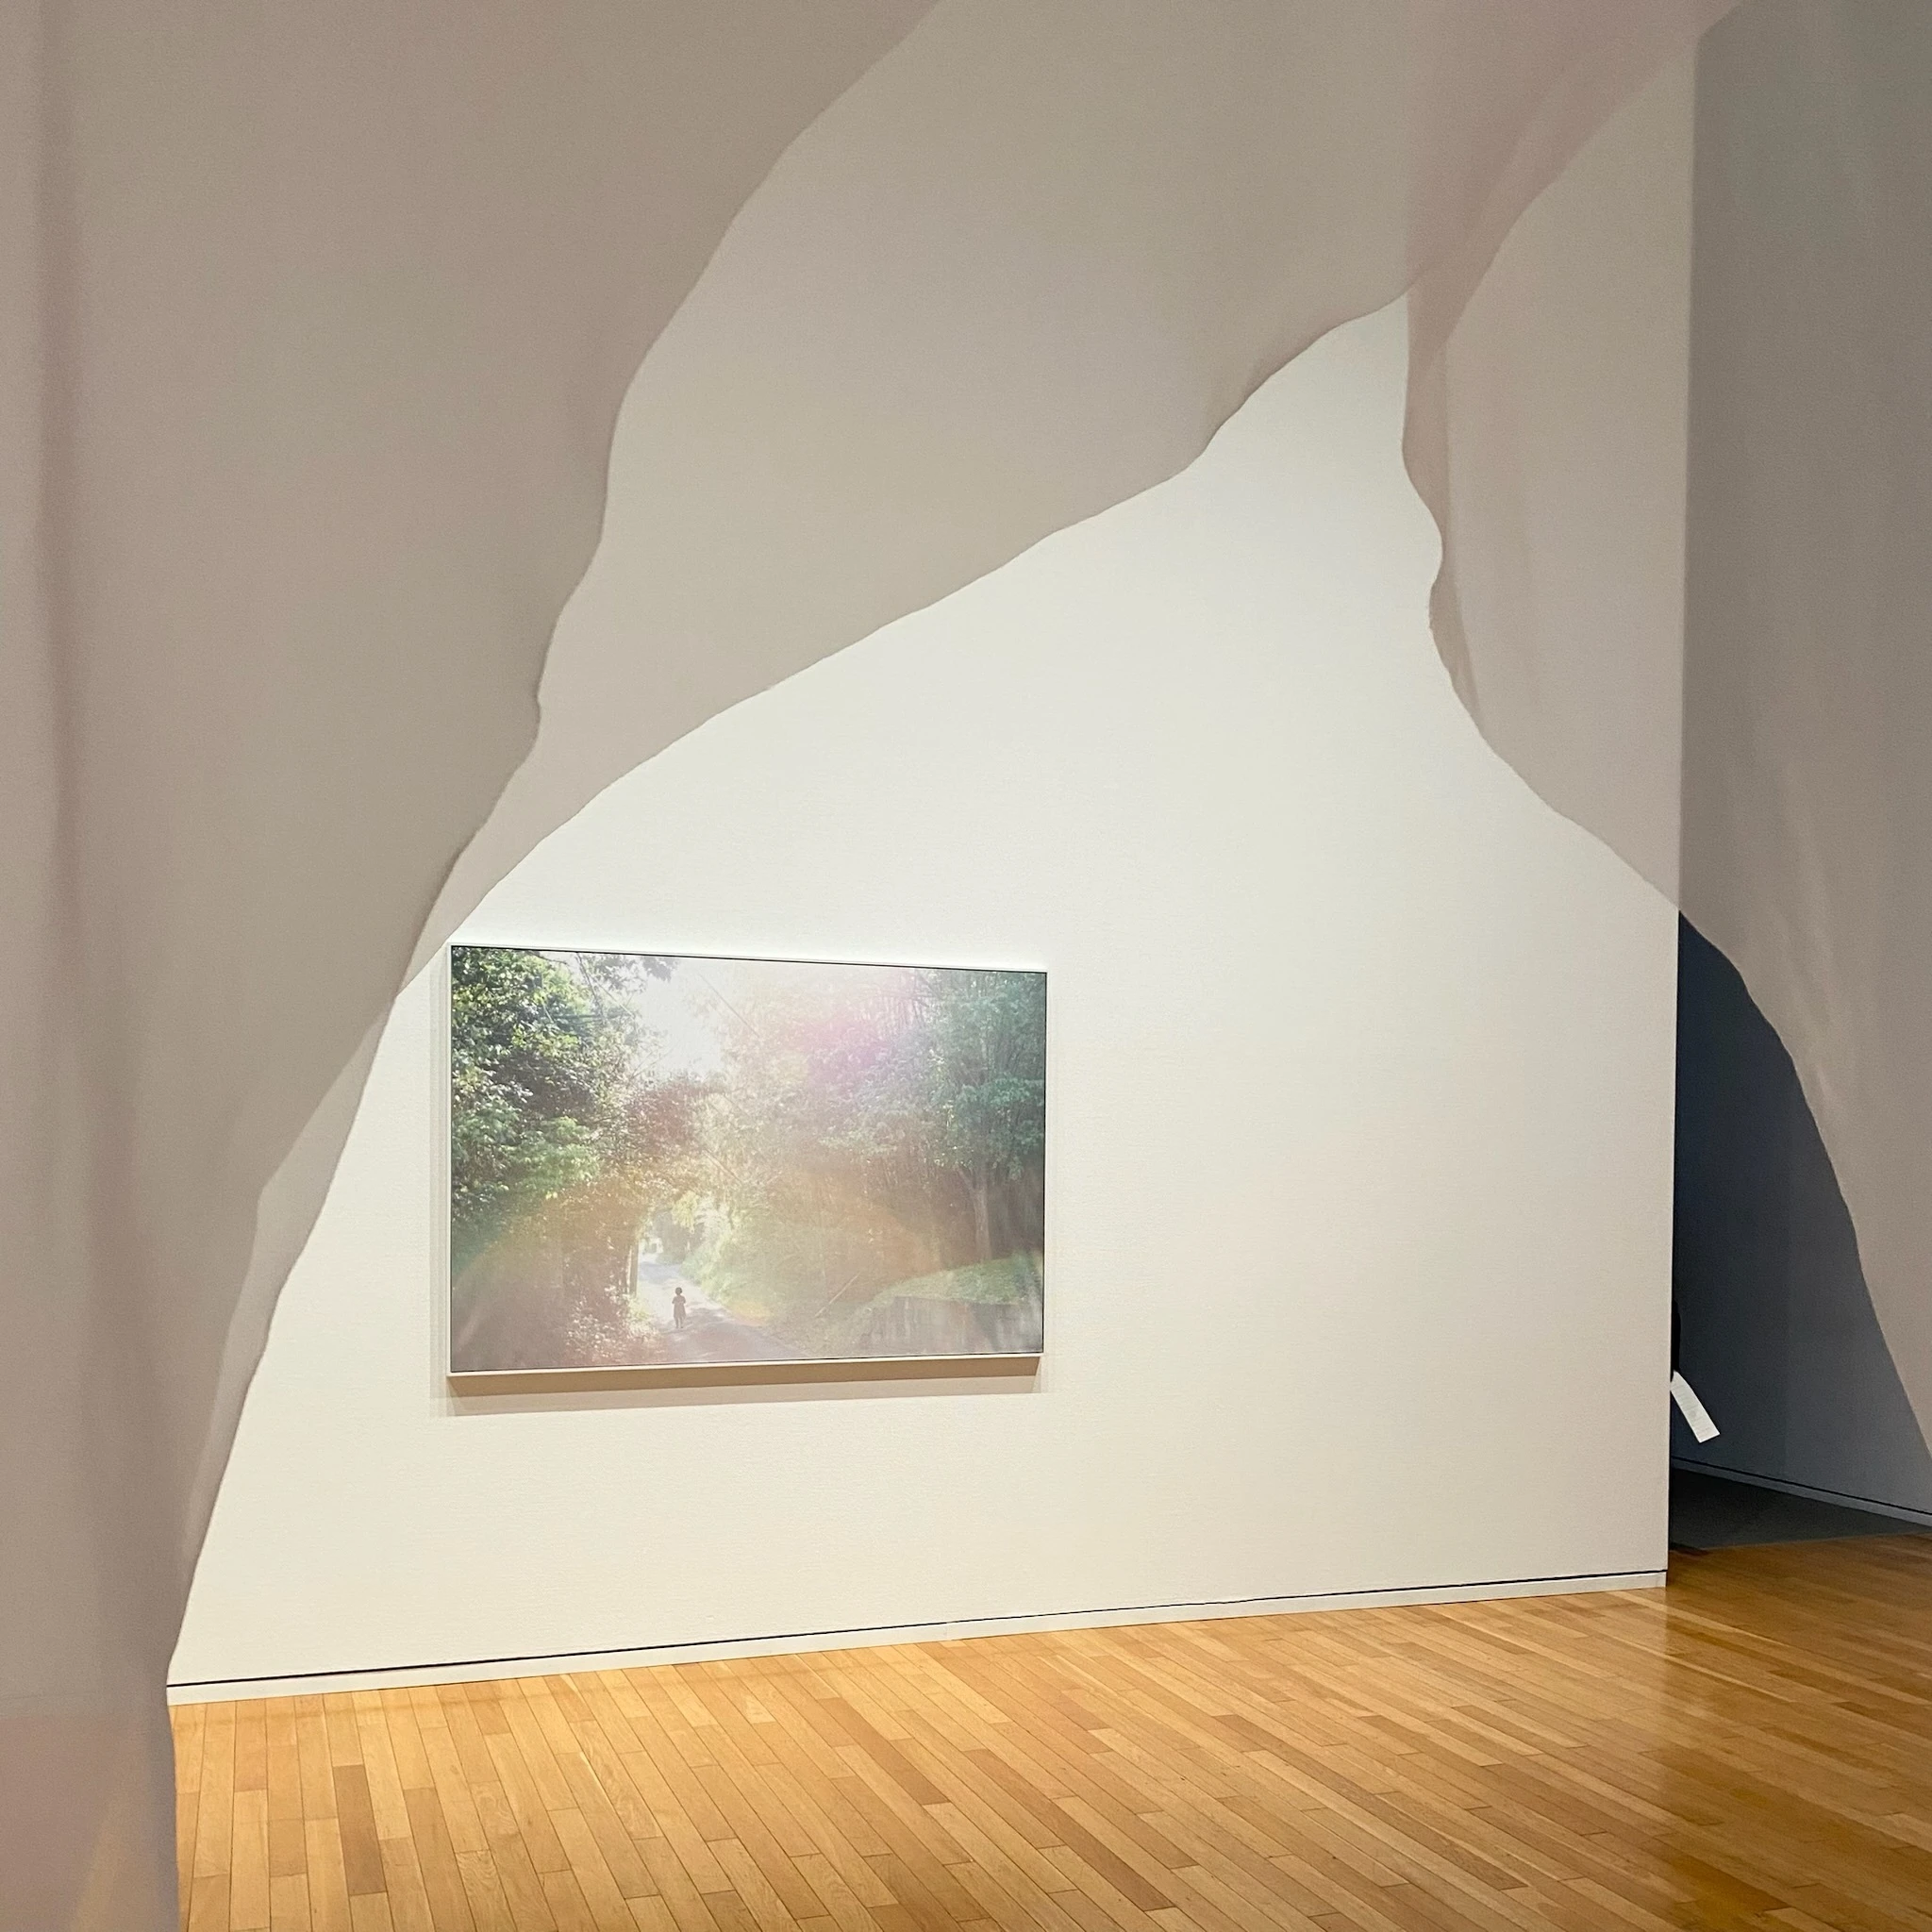 写真家・川内倫子さんの写真展「M/E 球体の上  無限の連なり」の様子。薄い布の中から、白い壁にかけられた写真を撮った写真です。展示されている写真は、自然の中に光が差している様子です。